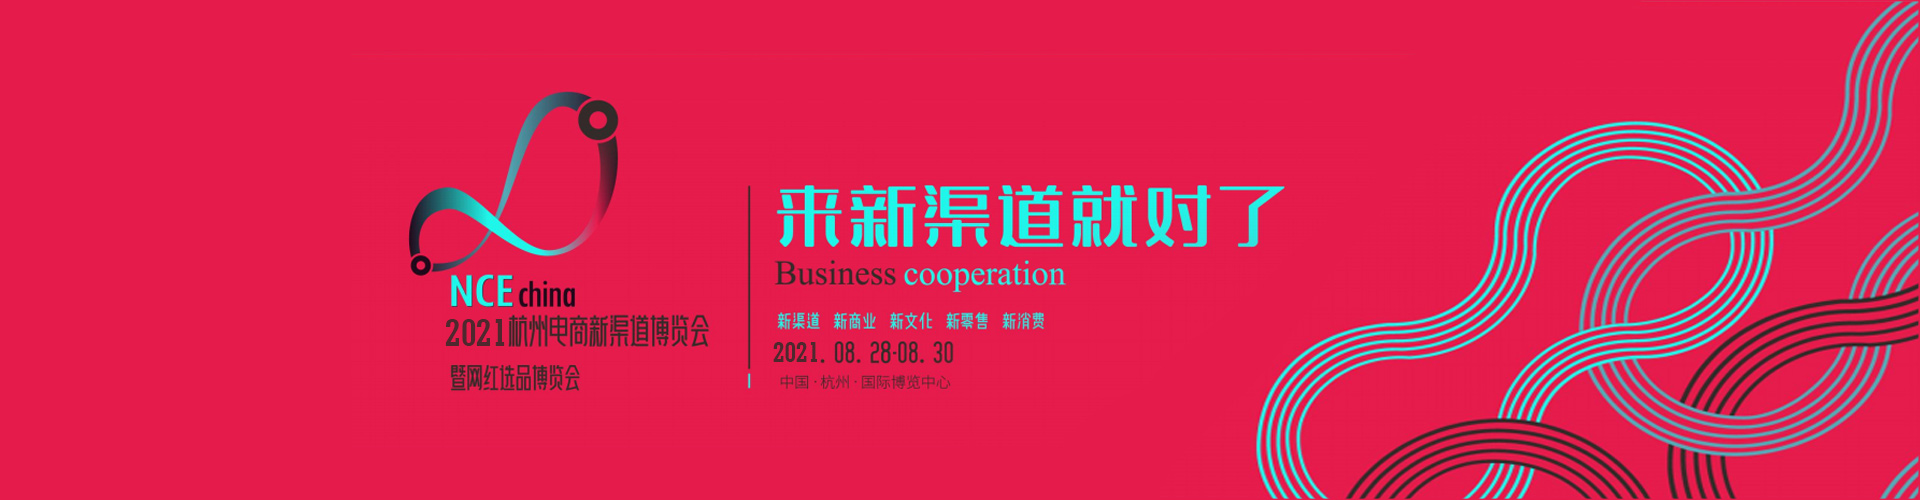 华东2020年跨境电商博览会邀请函